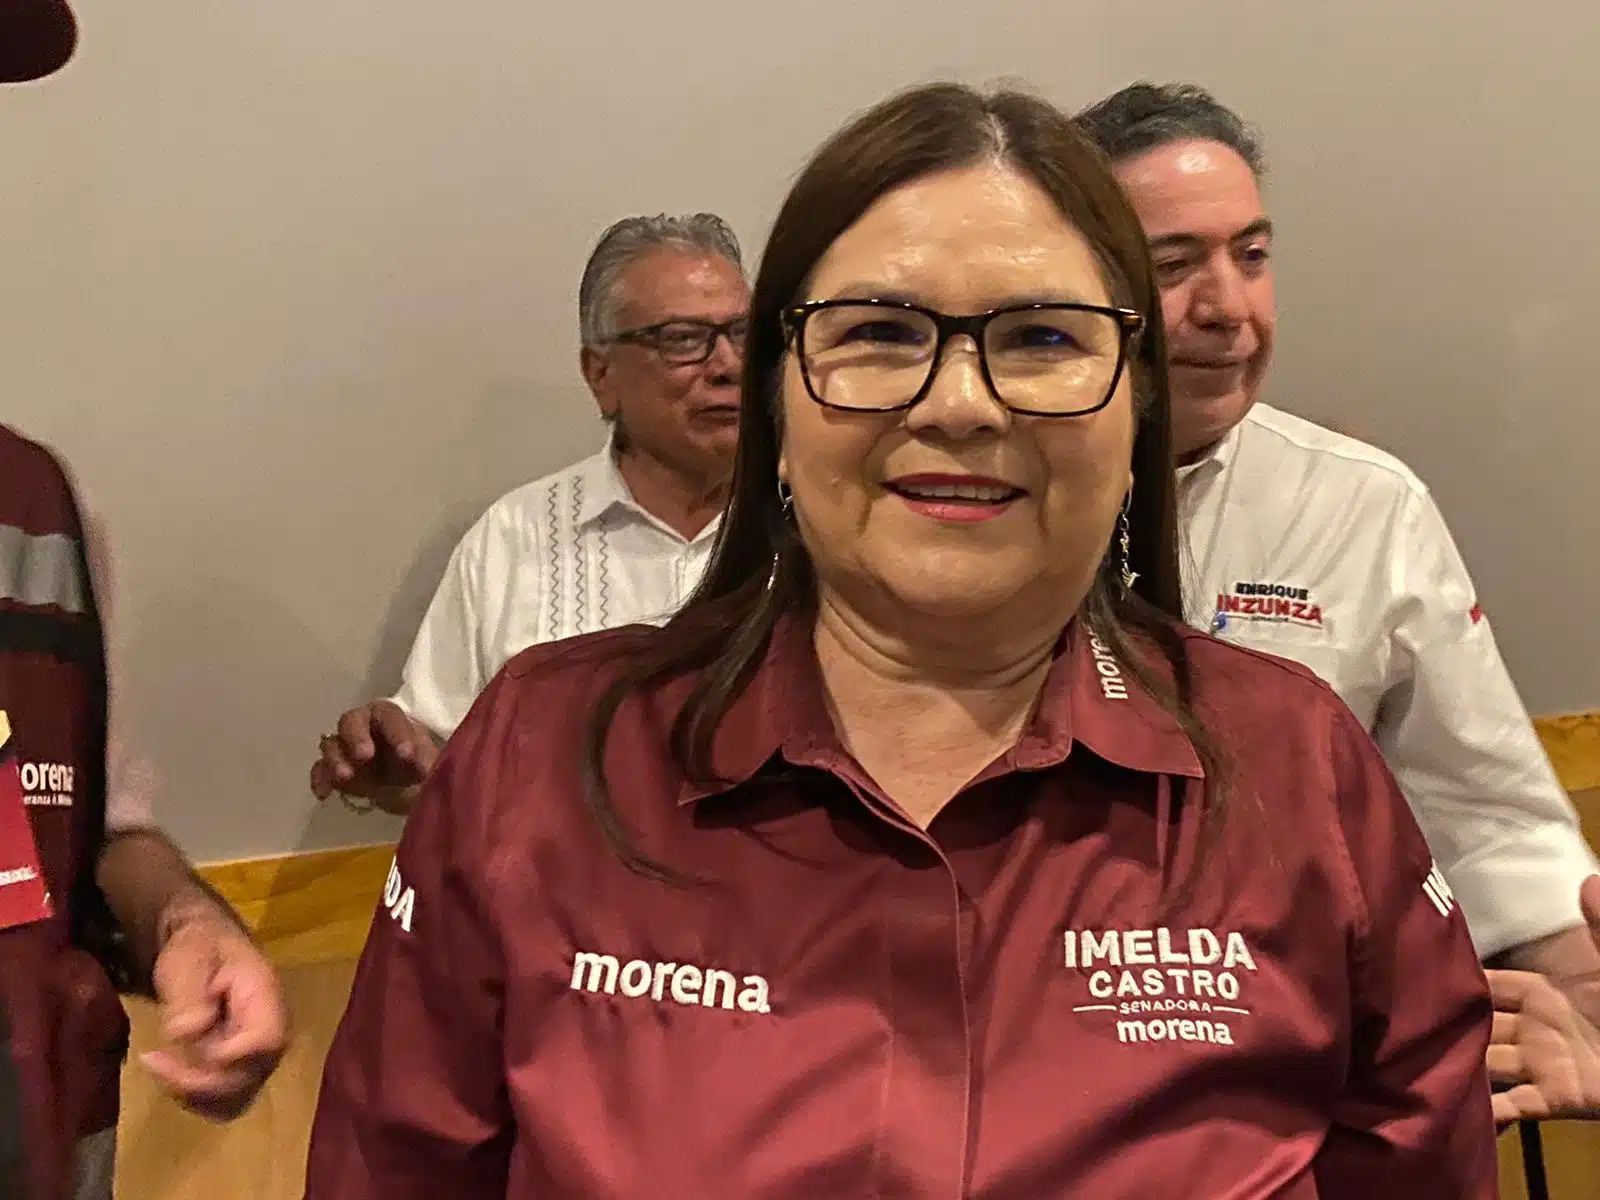 candidata a la senaduría por Morena, Imelda Castro Castro